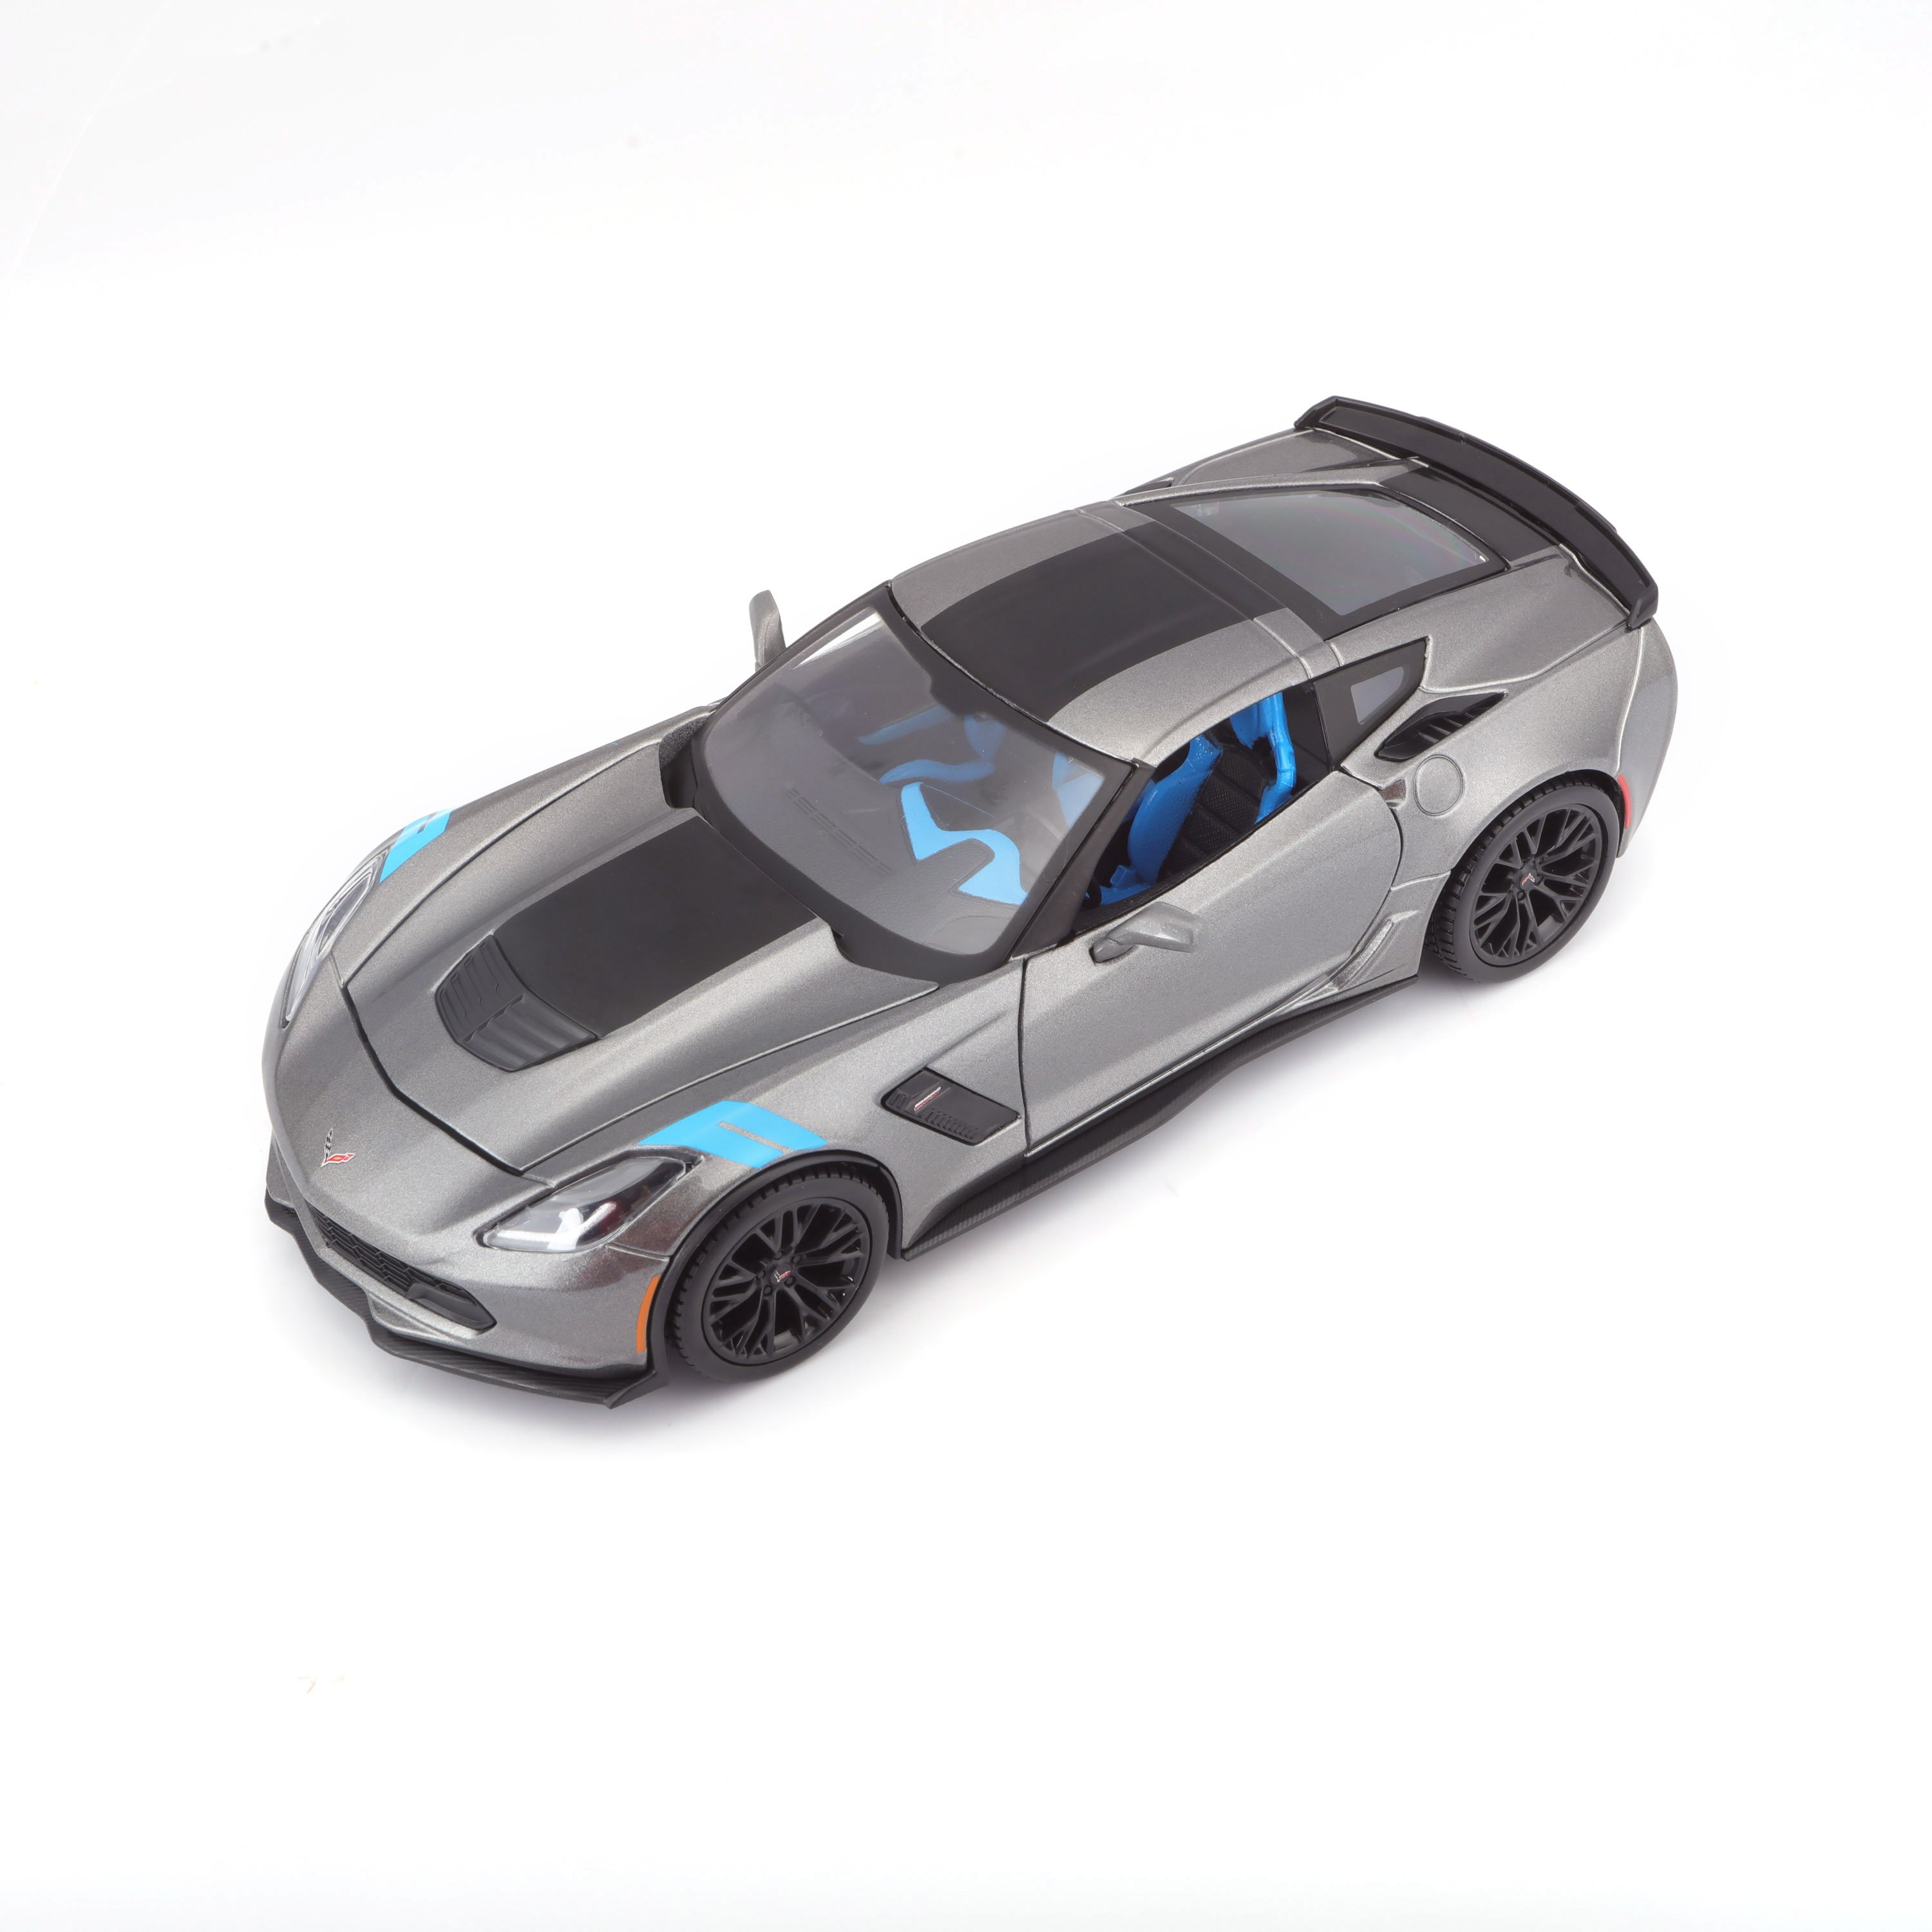 Игровая автомодель Maisto Corvette Grand Sport 2017, серый металлик, 1:24 (31516 met. grey) - фото 3